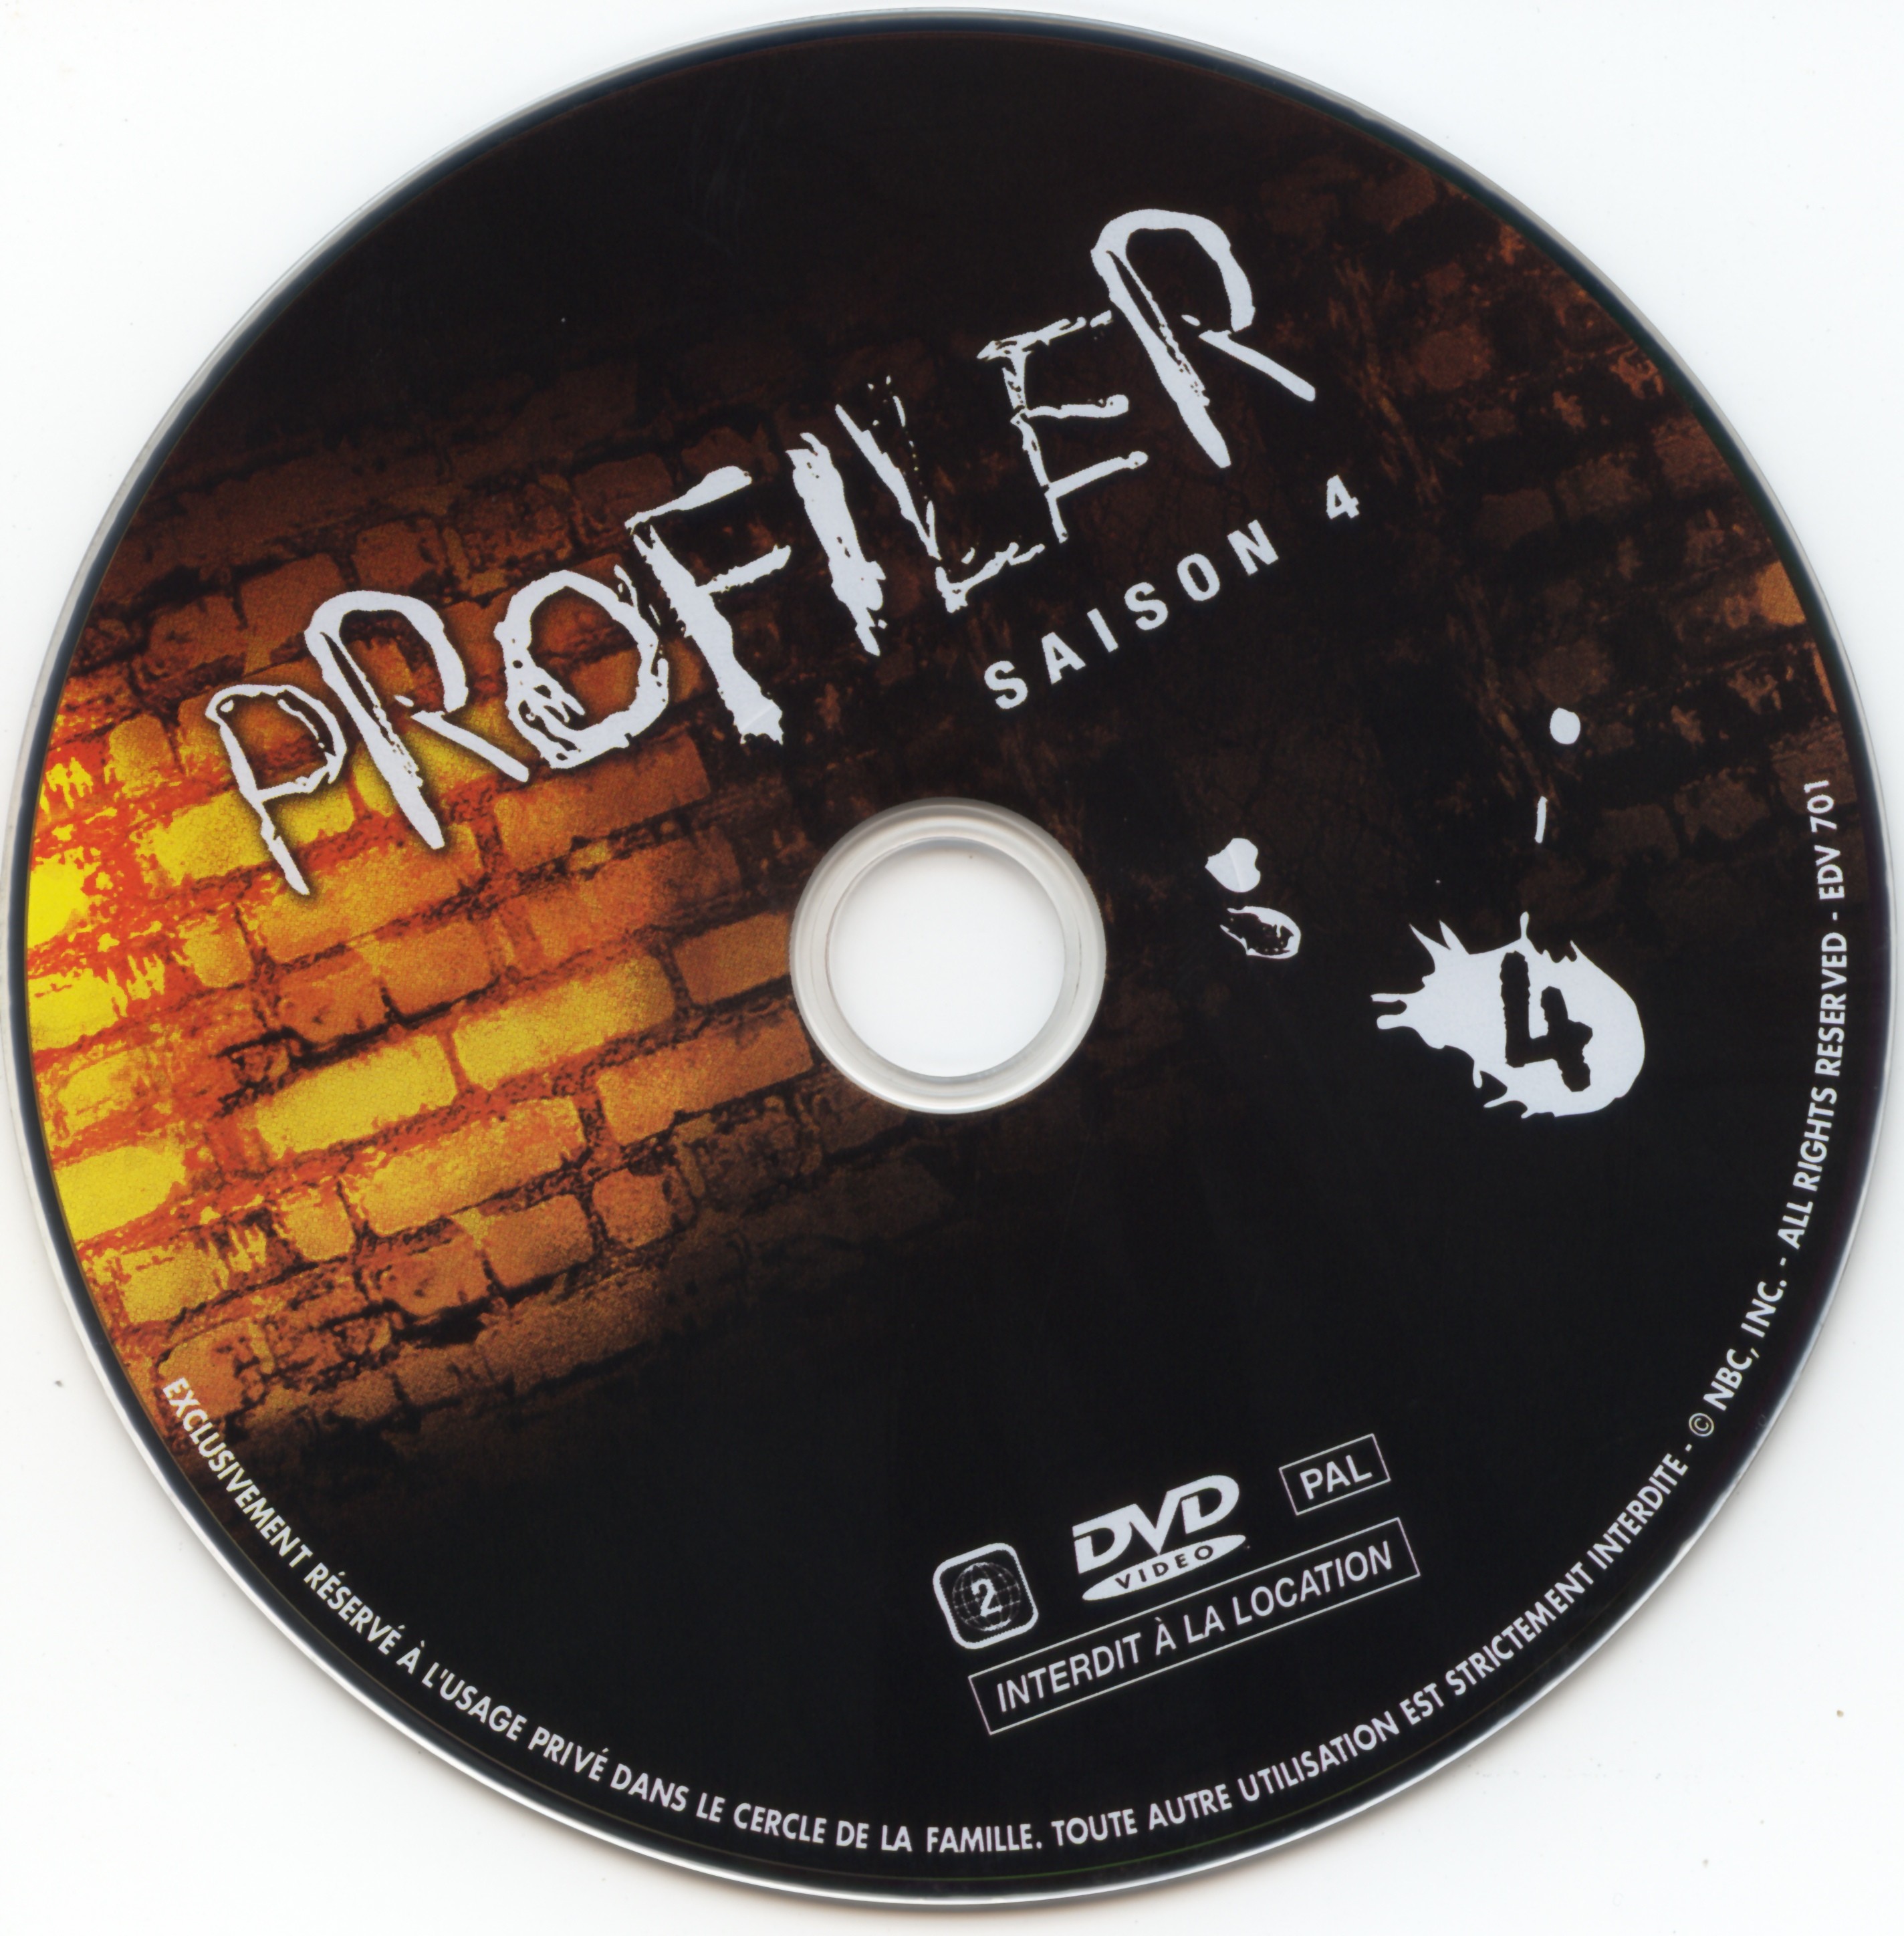 Profiler saison 4 DVD 4